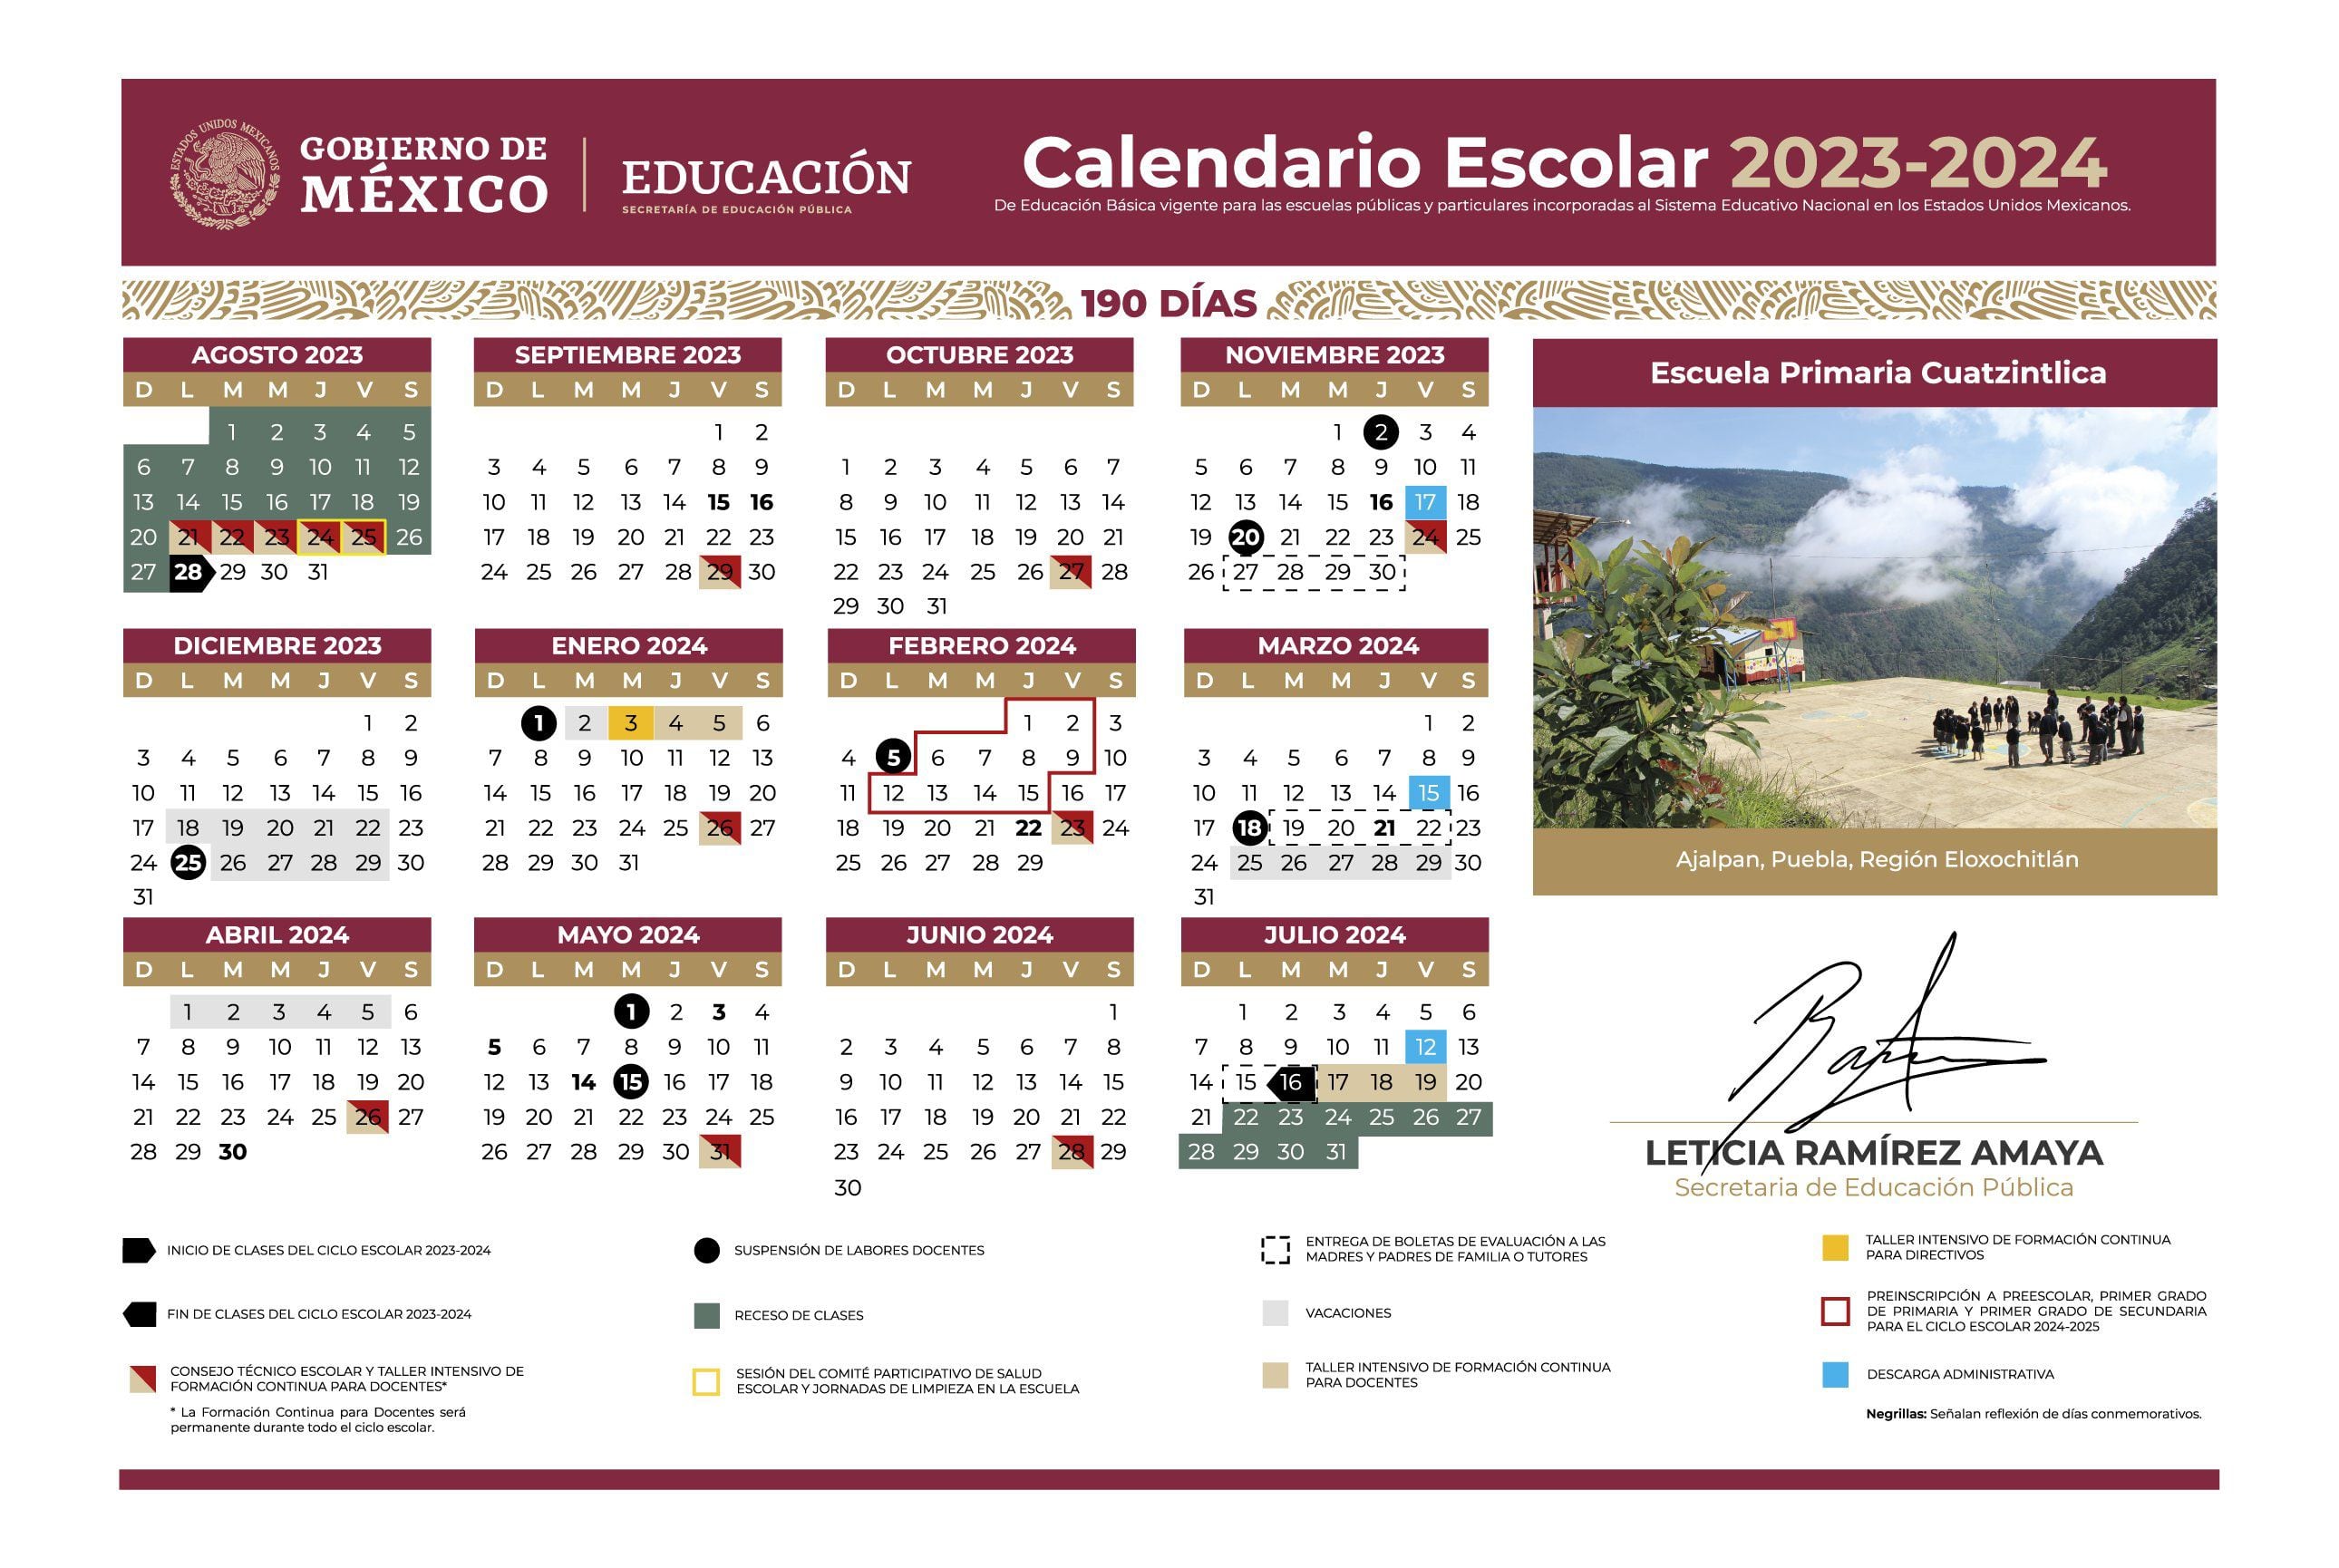 Calendario escolar 2023-2024 de la SEP, publicado el 26 de junio